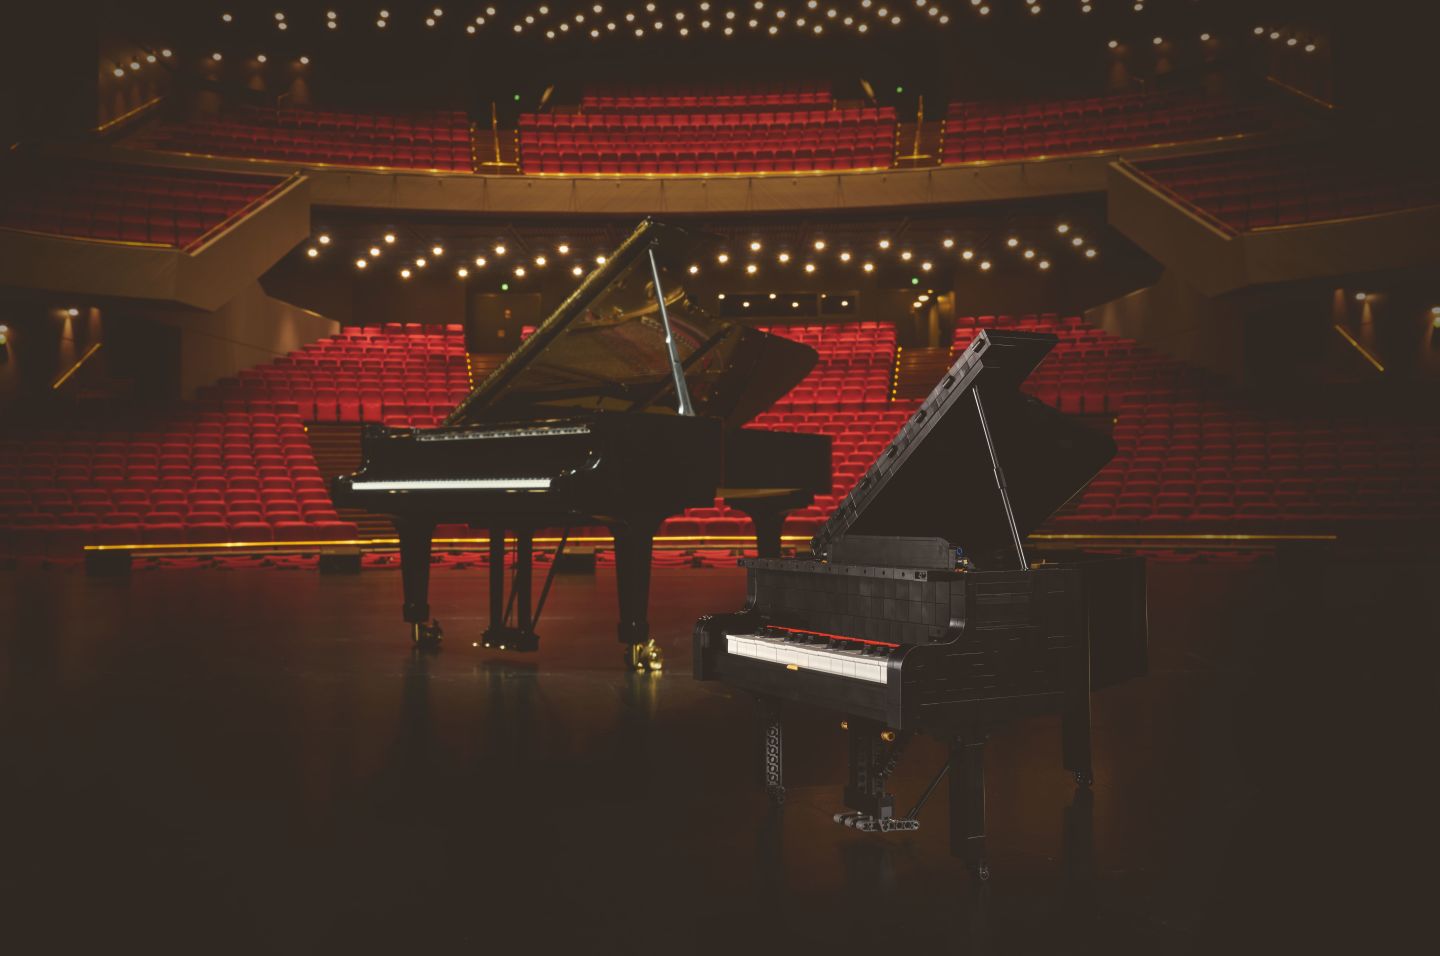 乐高推出粉丝设计的可播放乐曲的三角钢琴积木套装